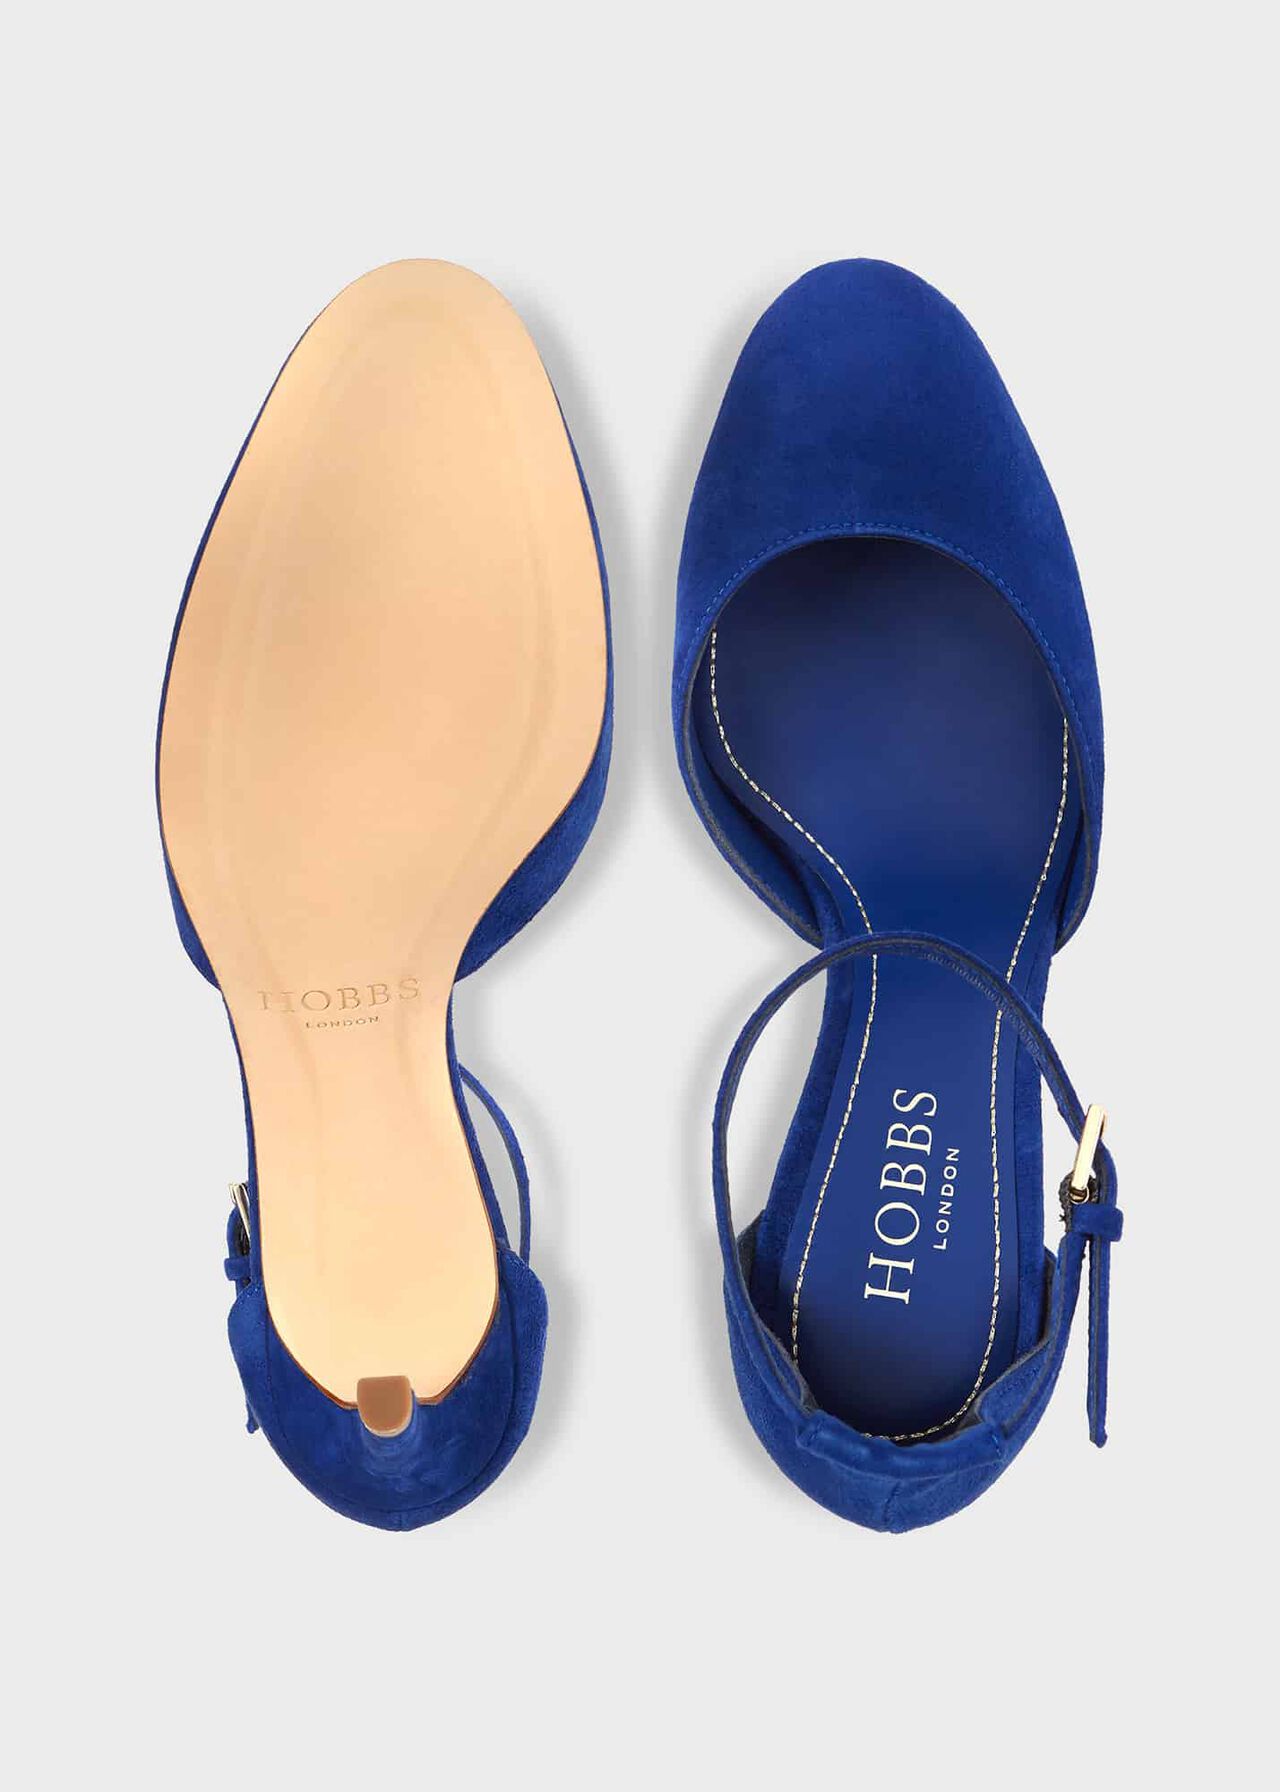 Elliya Court Shoes, Cobalt Blue, hi-res